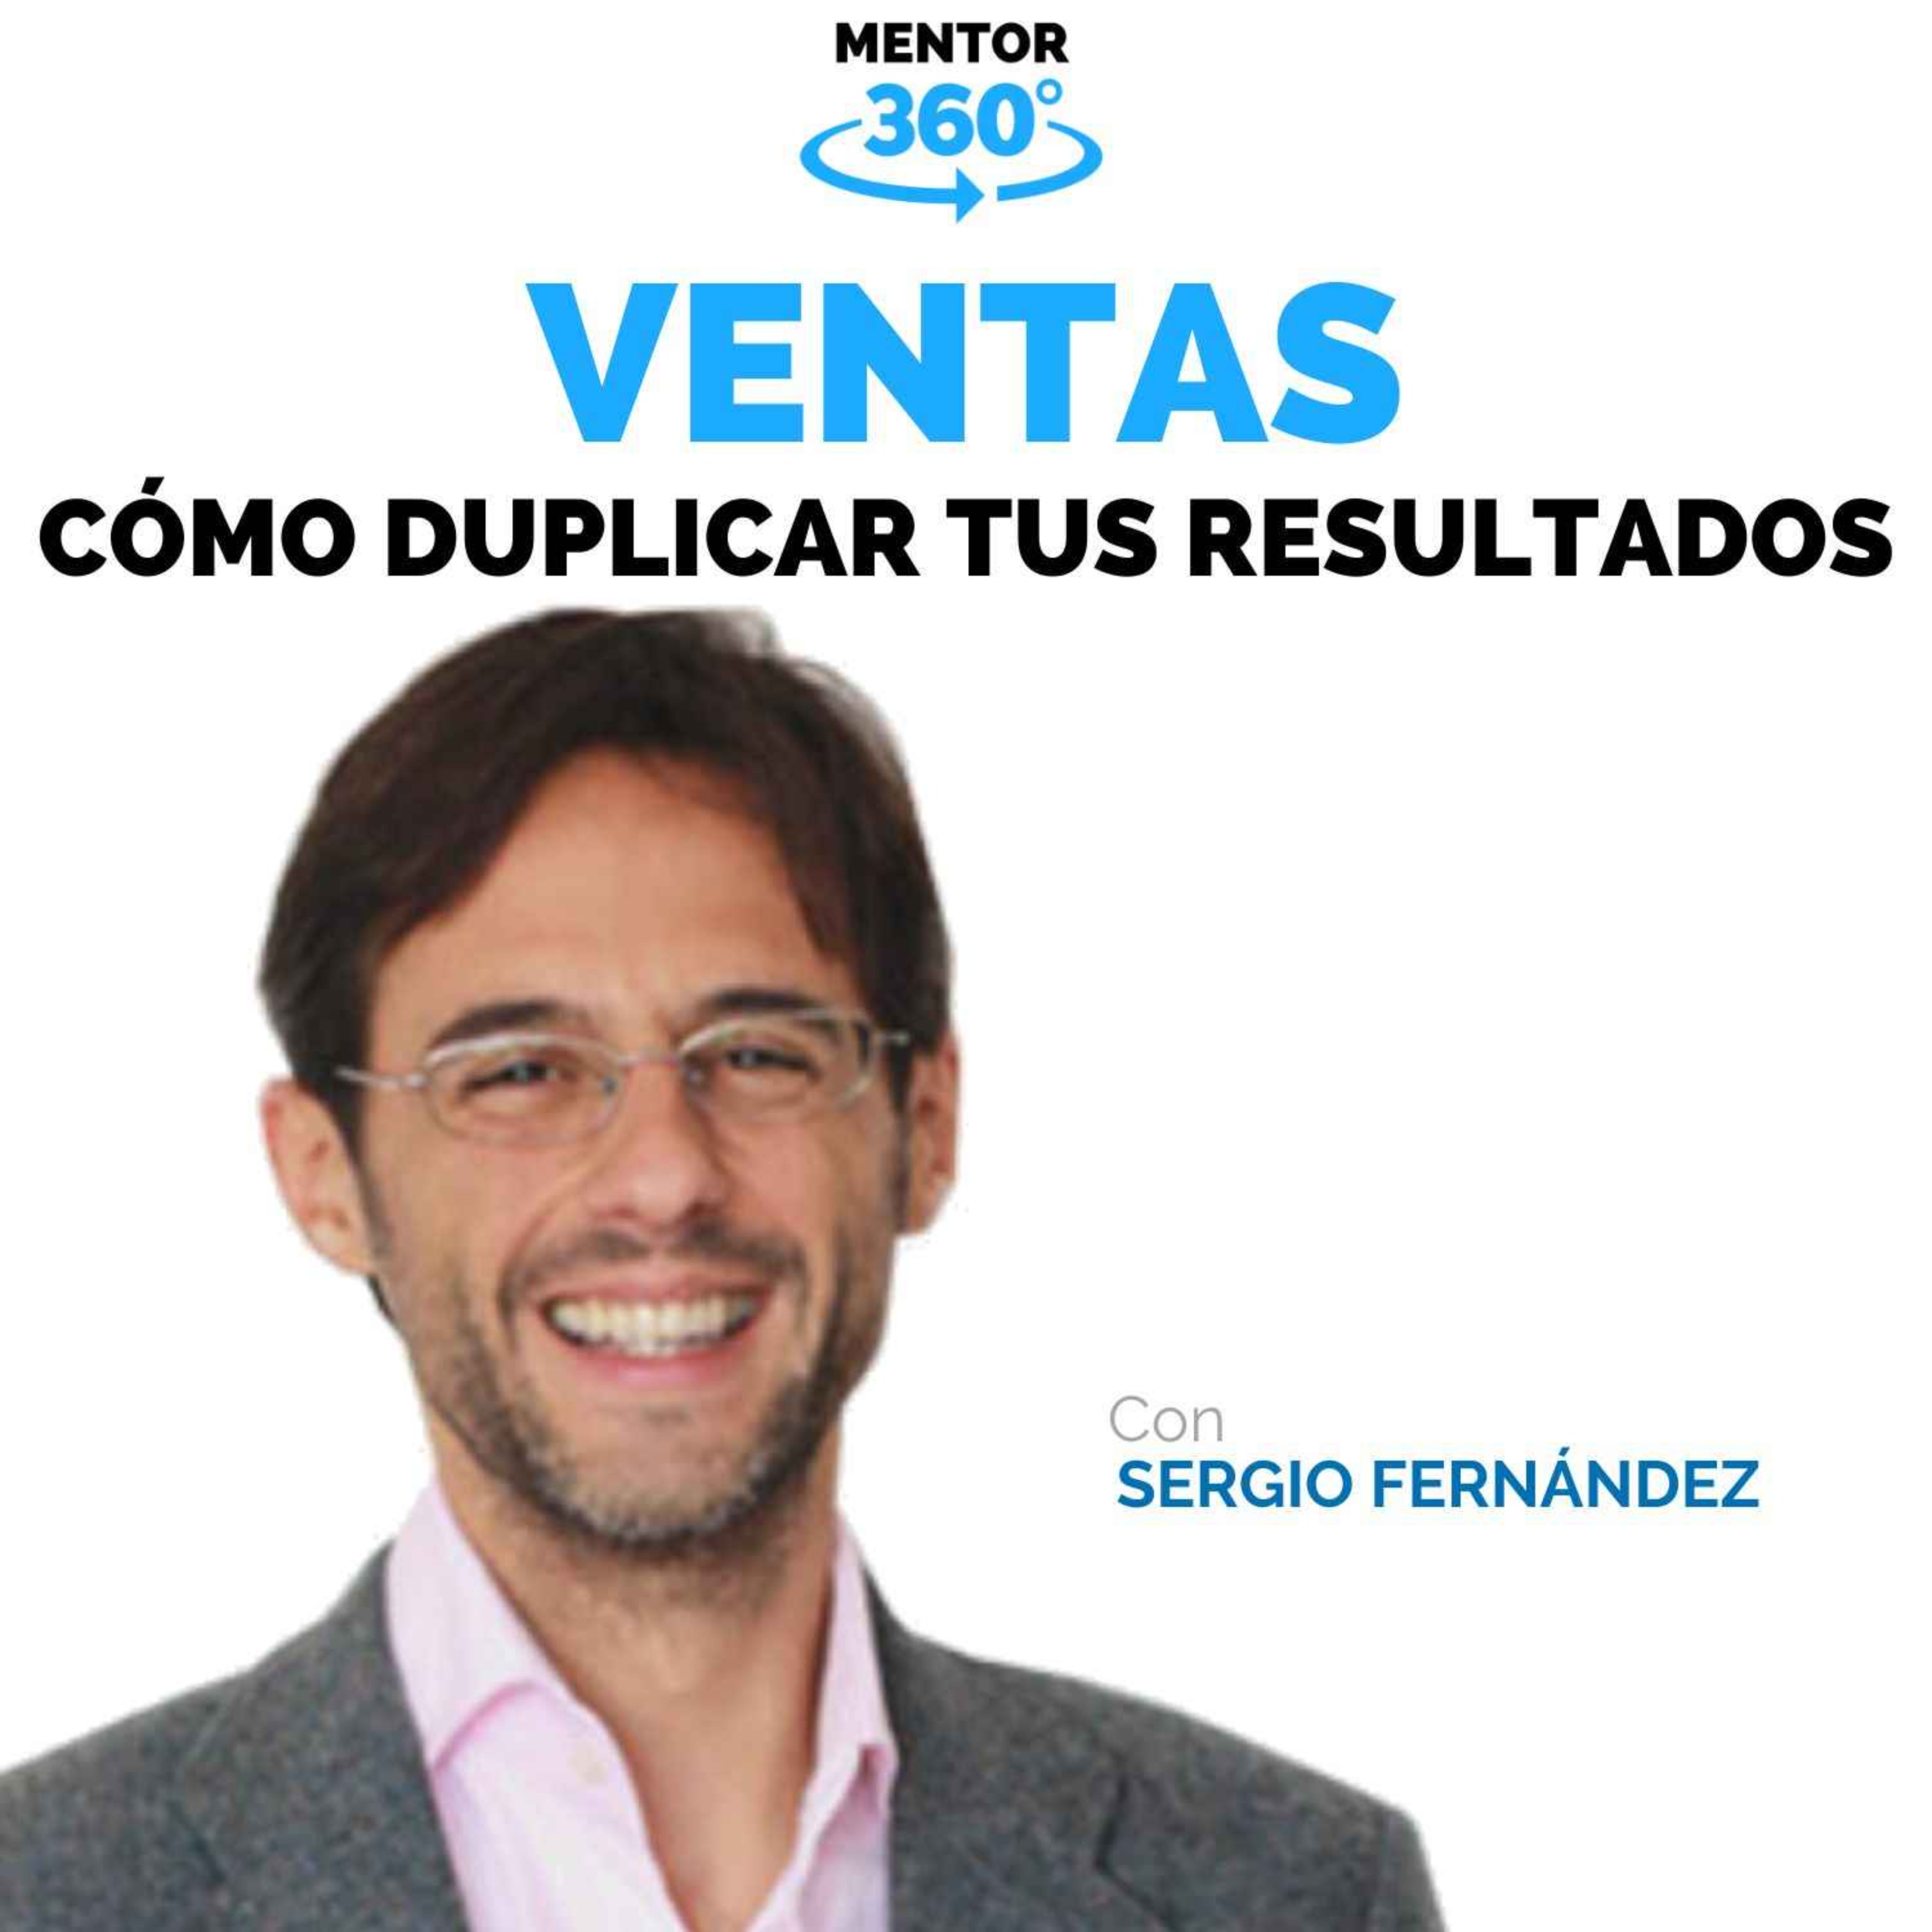 Cómo Duplicar los Resultados de Tu Negocio - Sergio Fernández - Ventas - MENTOR360